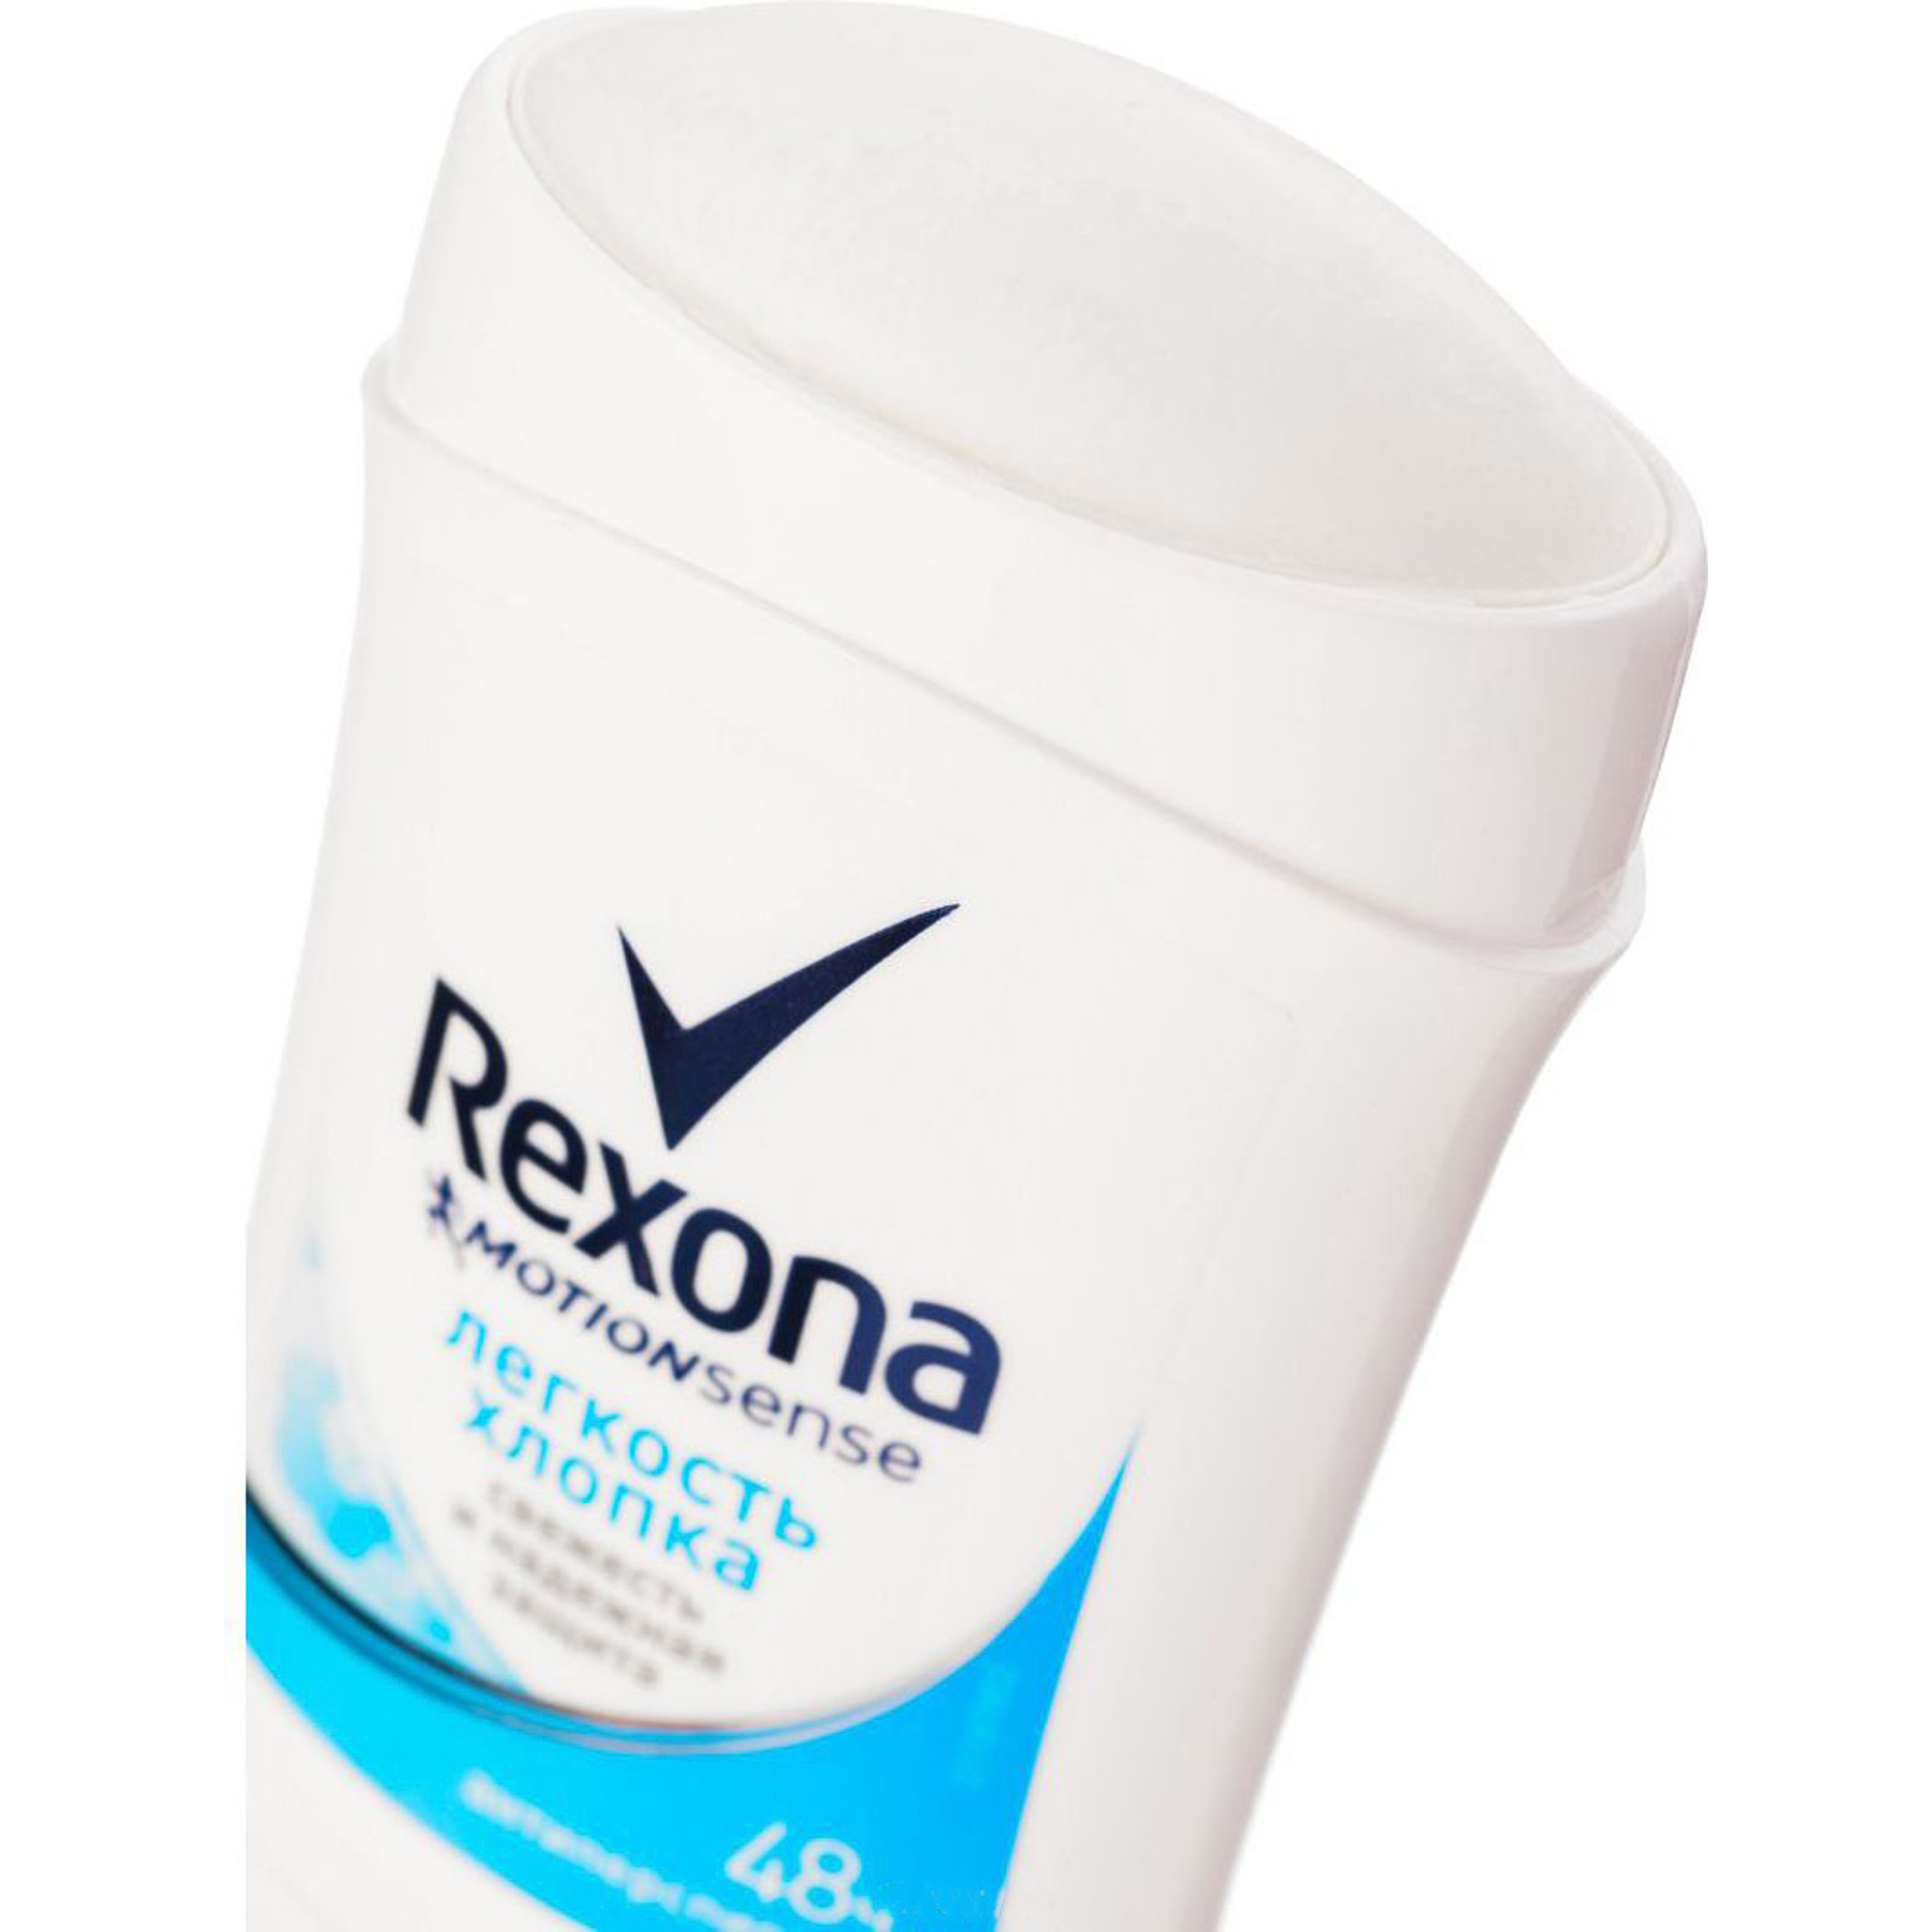 Rexona дезодорант-антиперспирант стик Rexona свежесть душа (40 мл). Rexona дезодорант-антиперспирант стик Rexona свежесть хлопка (40 мл). Рексона твердый дезодорант женский. Антиперспирант-карандаш Rexona свежесть хлопка 40мл. Твердый дезодорант стик